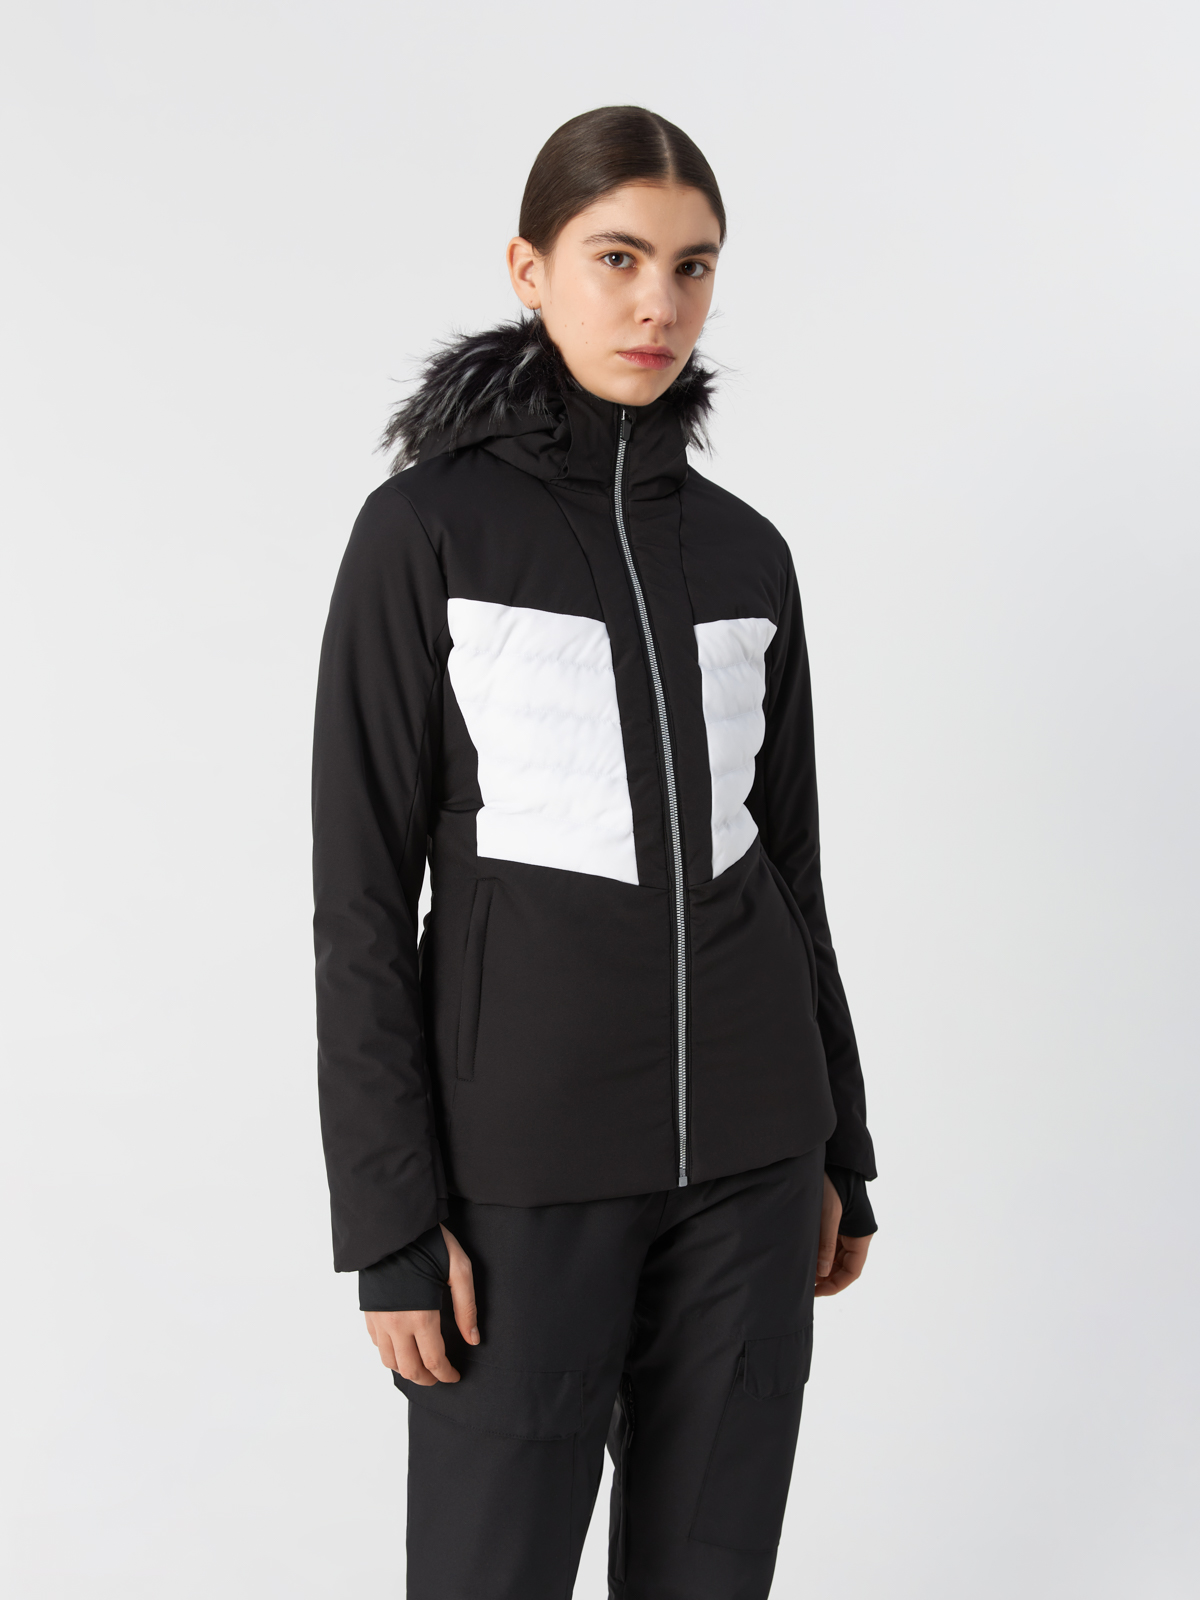 Куртка Fundango для женщин, размер L, 2QAD110, чёрная